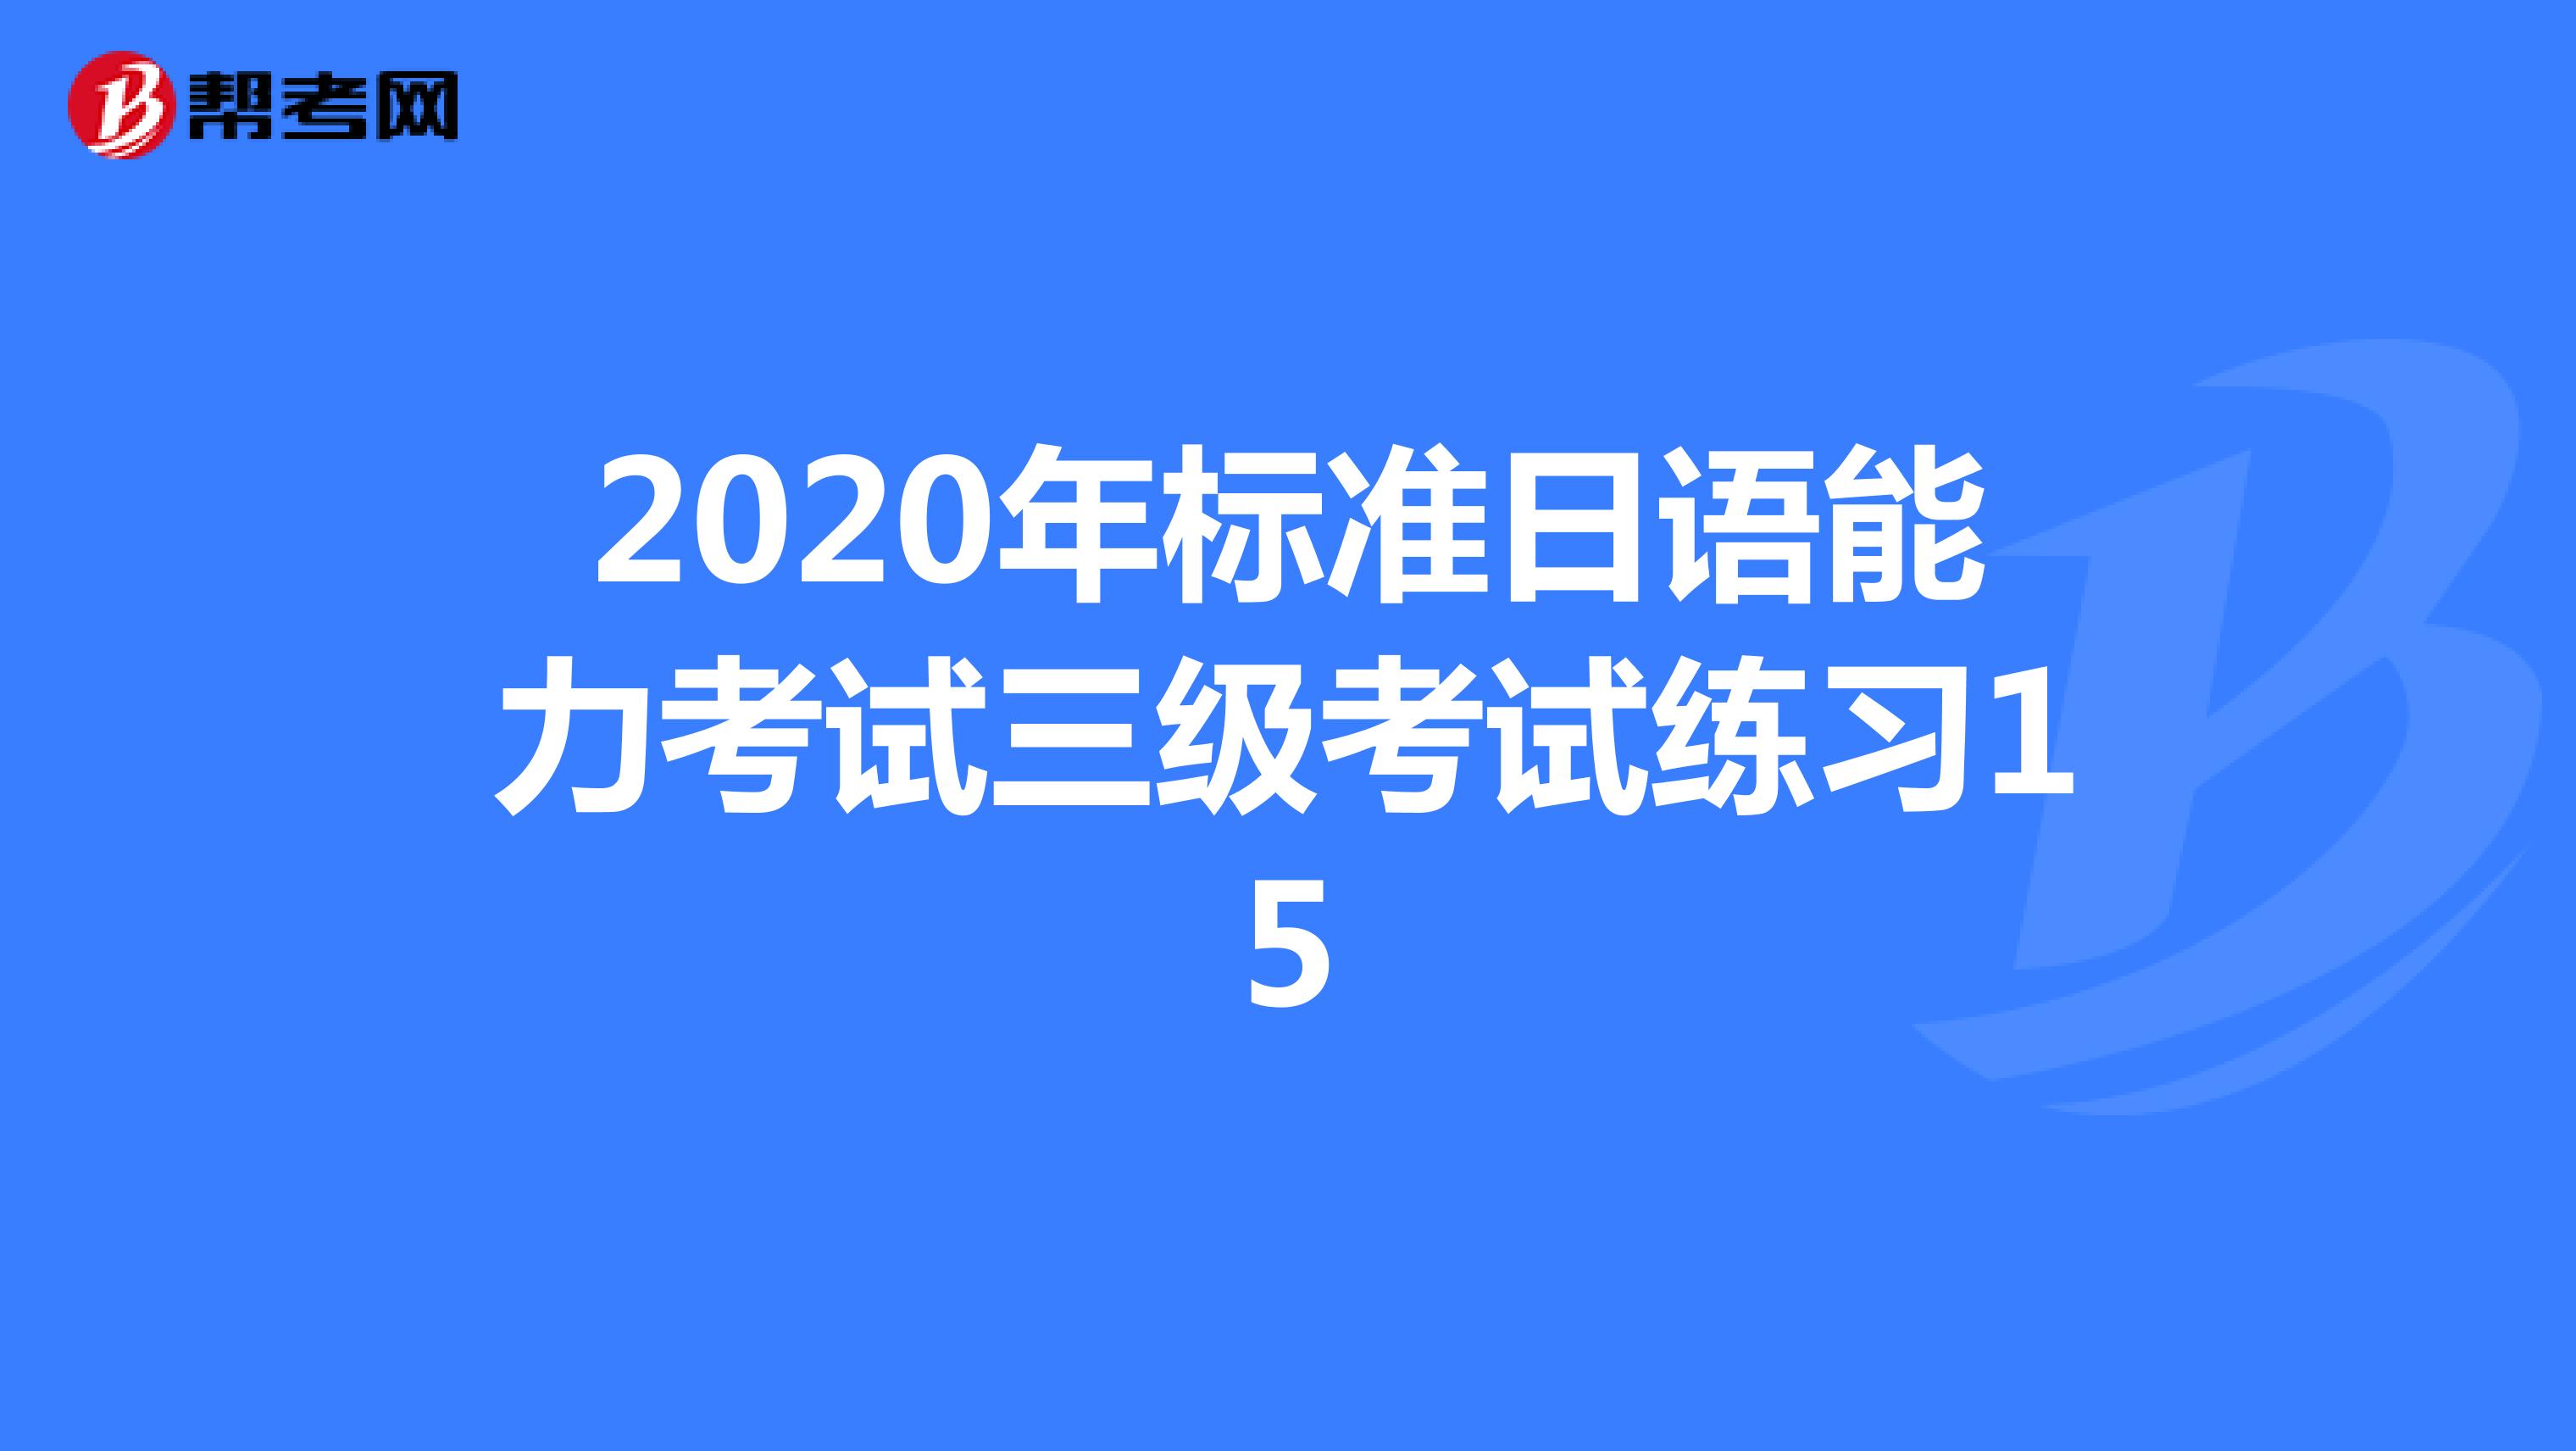 2020年标准日语能力考试三级考试练习15